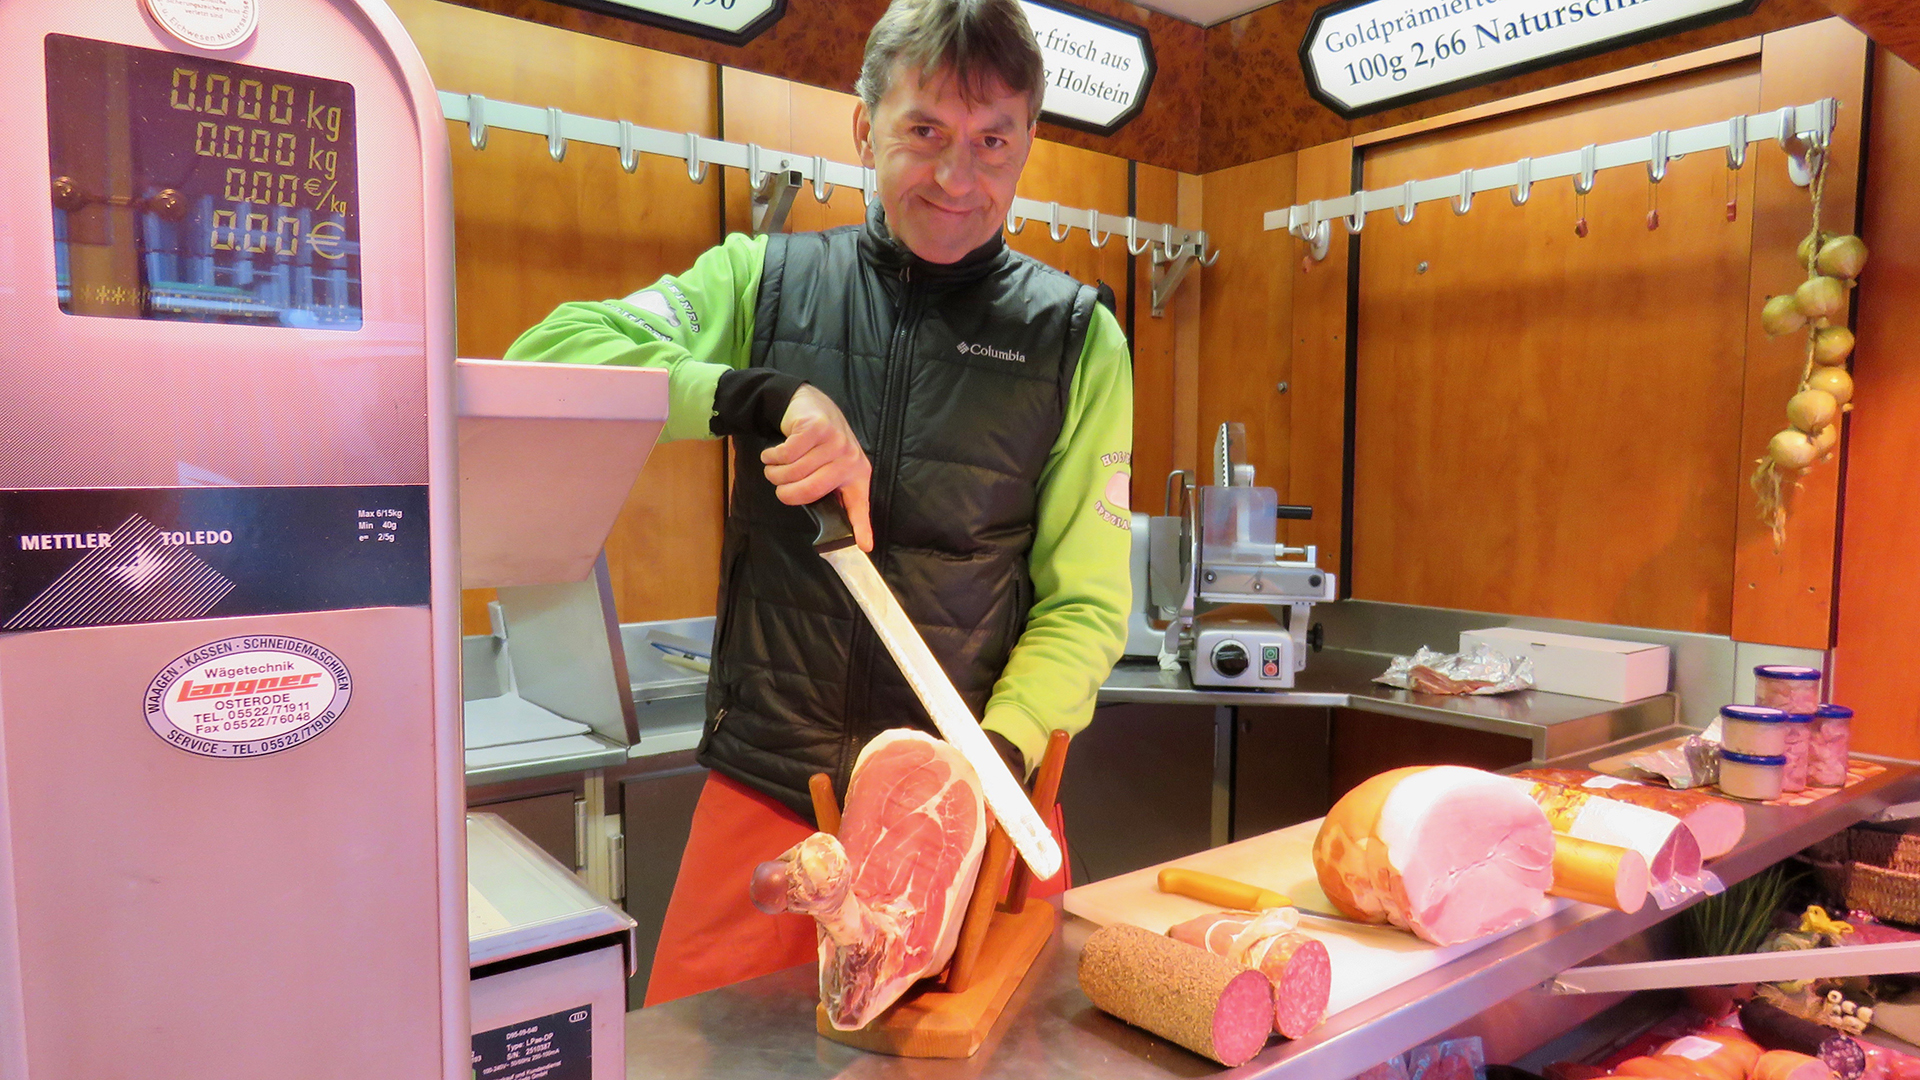 In einem Verkaufswagen auf dem Wolfenbütteler Wochenmarkt steht ein Mann hinter einem Verkaufstresen und schneidet mit einem Messer eine Scheibe Schinken.